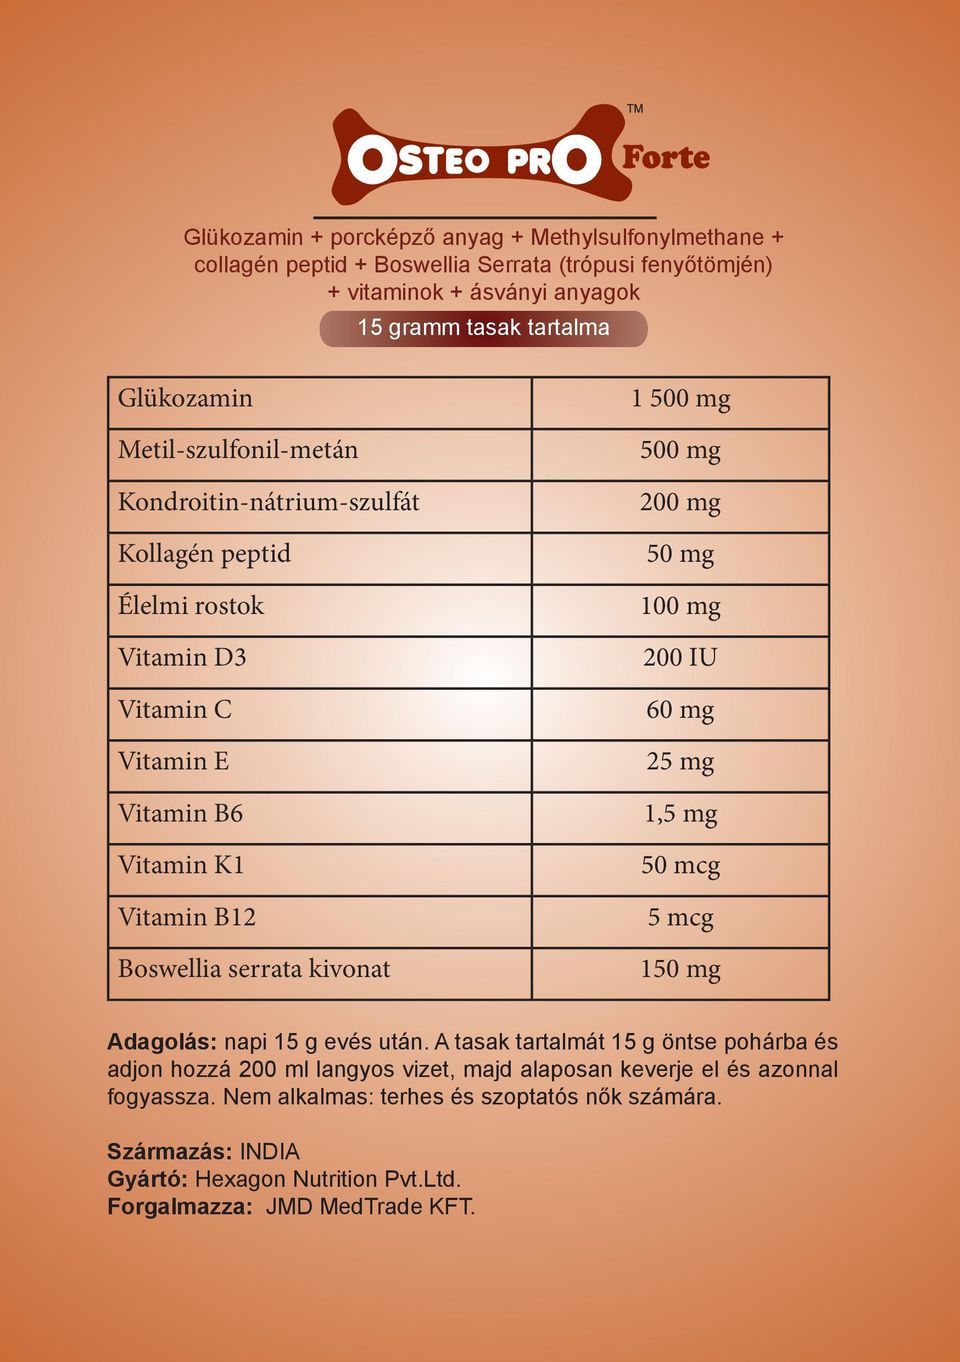 mg 500 mg 200 mg 50 mg 100 mg 200 IU 60 mg 25 mg 1,5 mg 50 mcg 5 mcg 150 mg Adagolás: napi 15 g evés után.